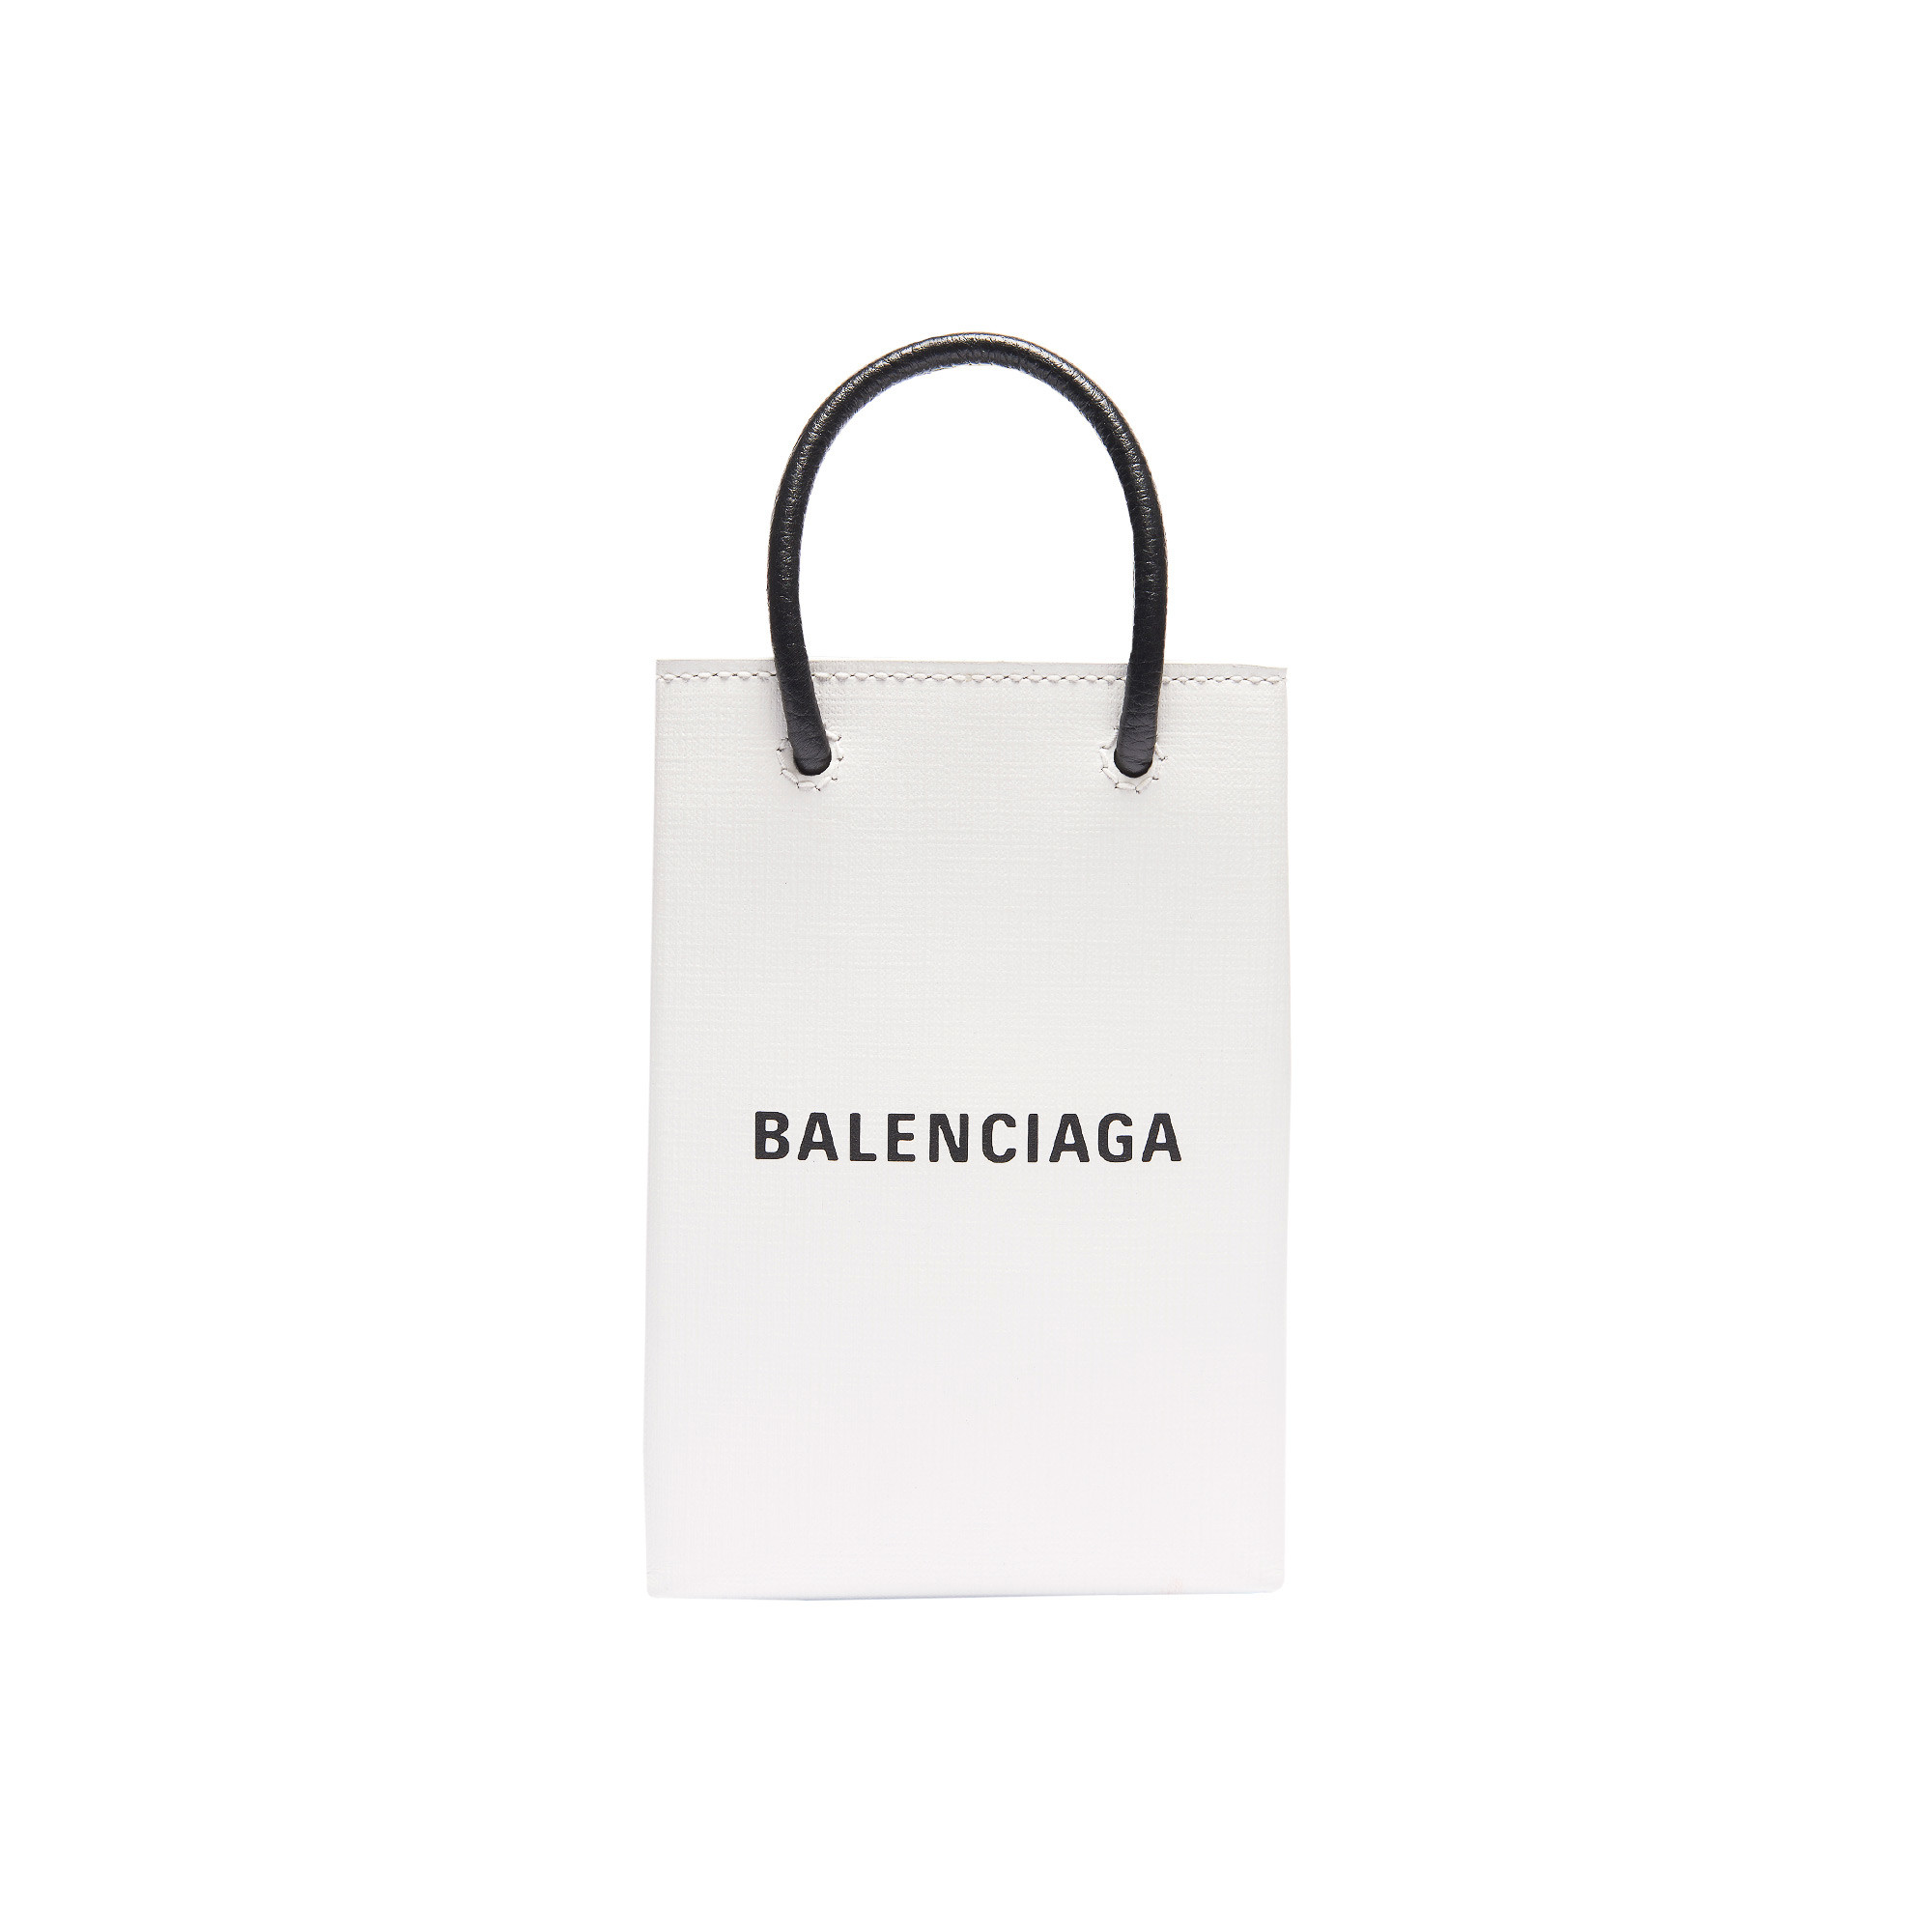 バレンシアガ、ブランドの紙袋を模したバッグラインから新作「フォン 